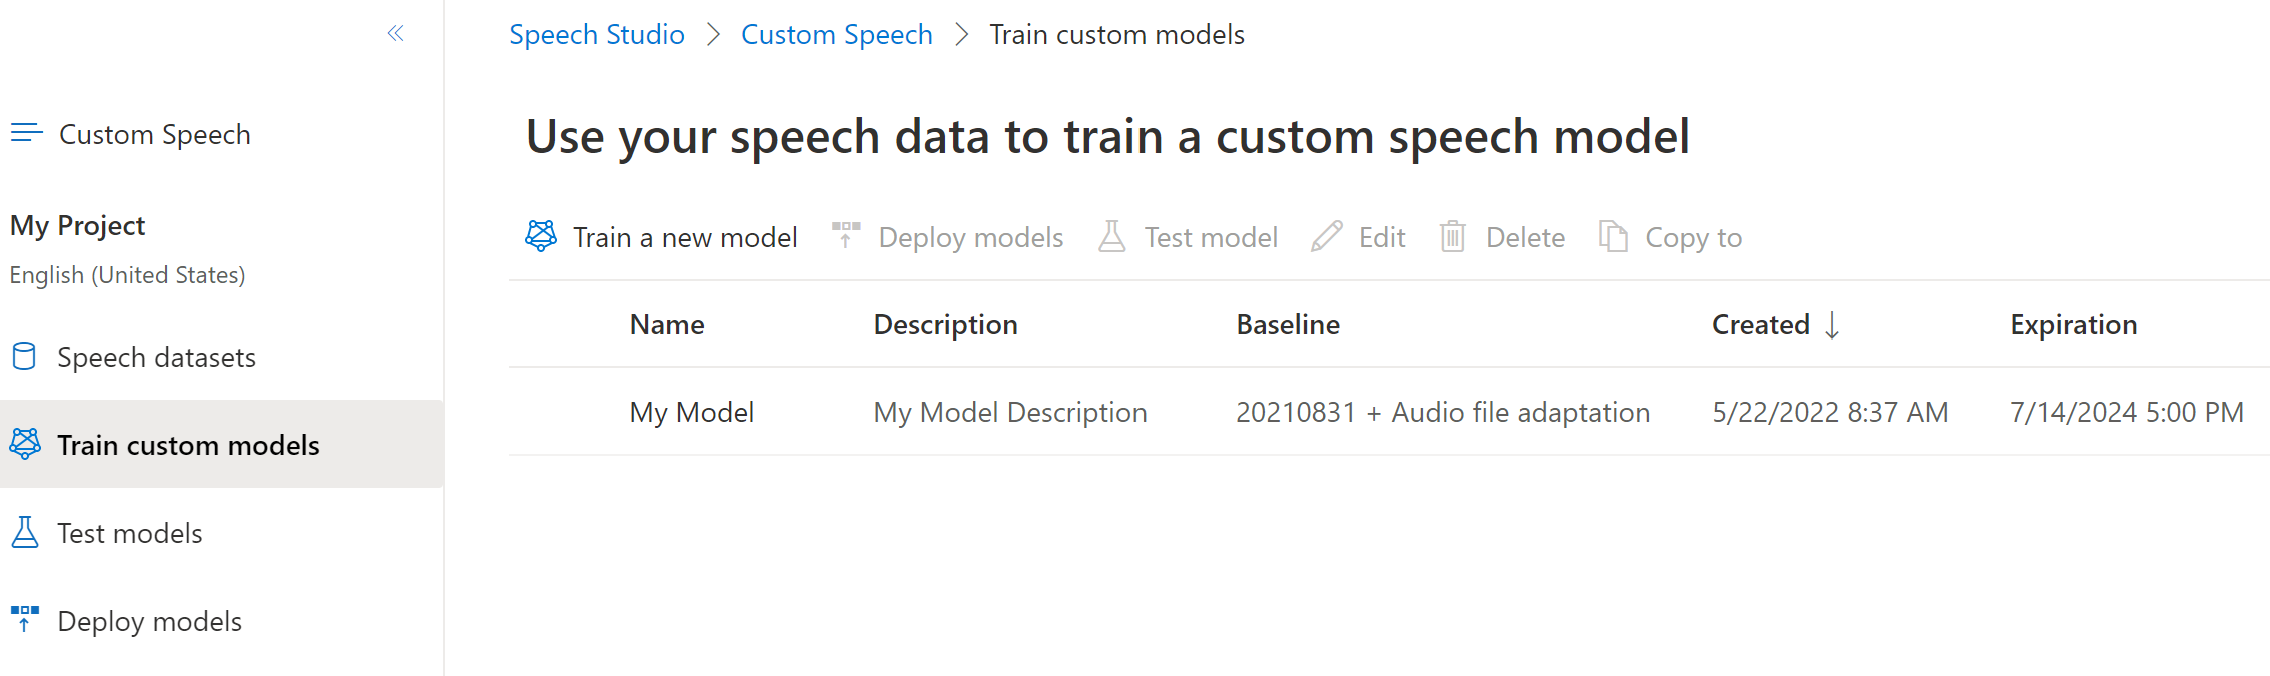 显示听录到期日期的“训练自定义模型”页的屏幕截图。